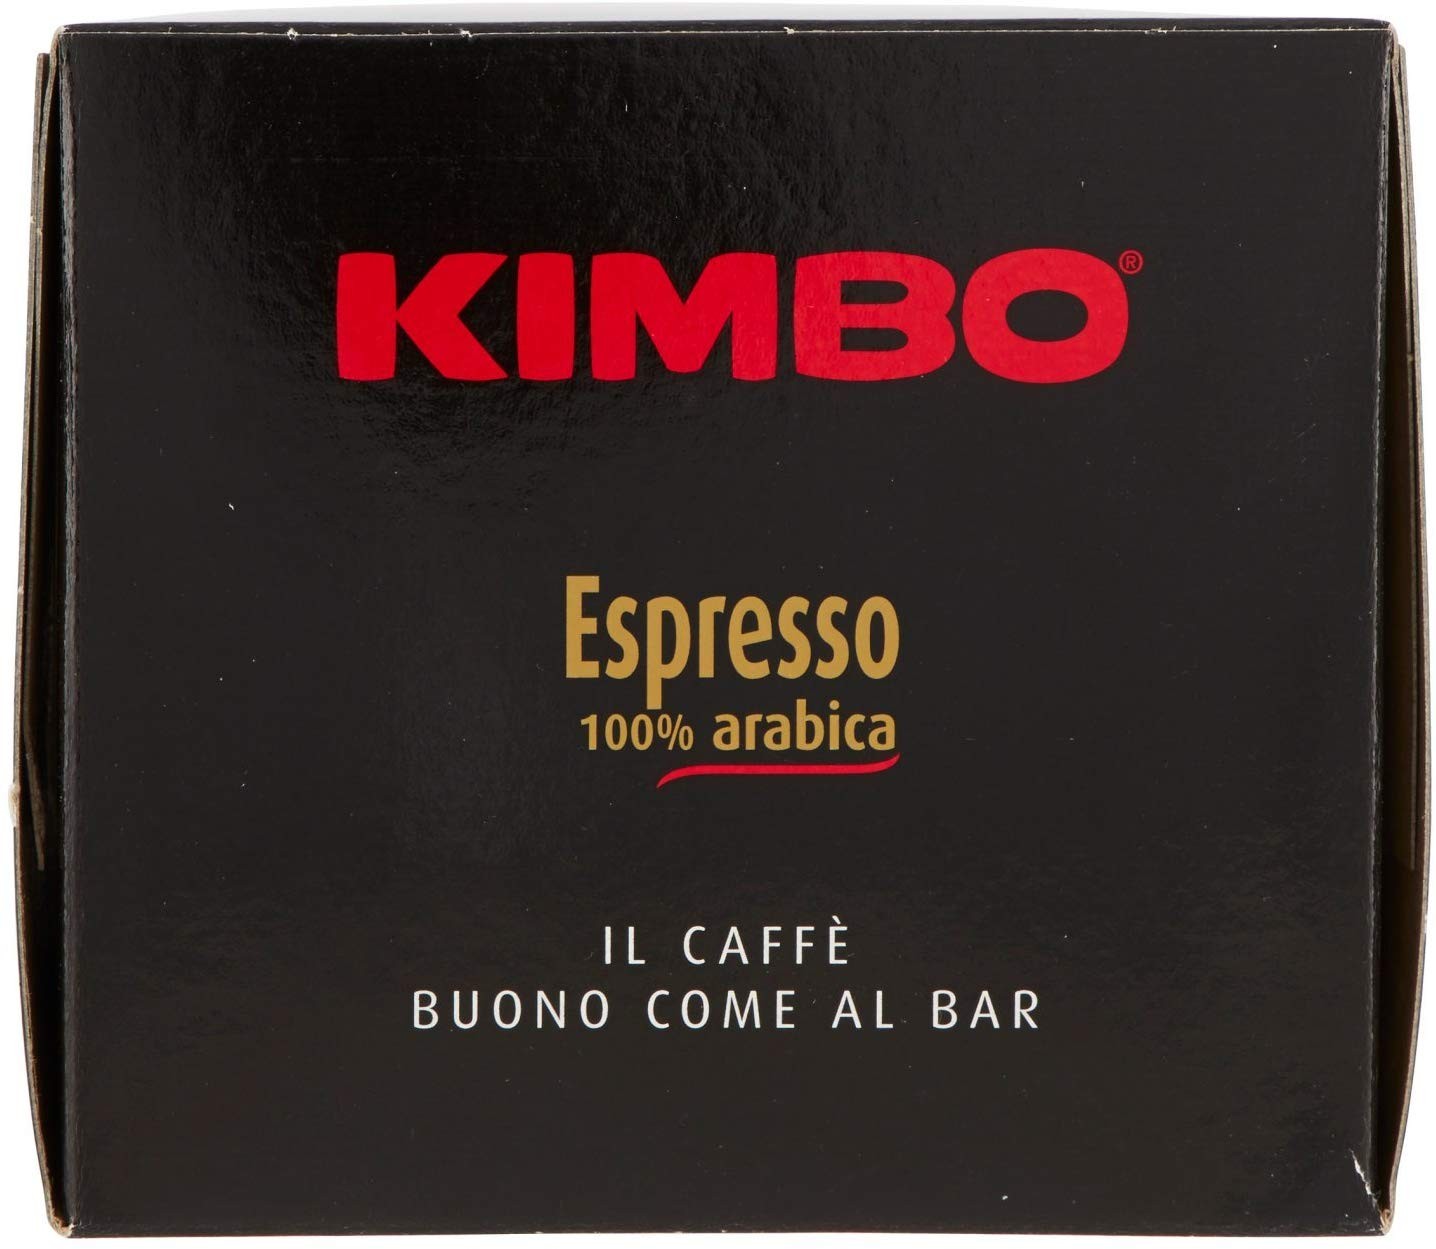 Kimbo Espresso Decaffeinato - 3 confezioni da 18 Cialde [54 Cialde]